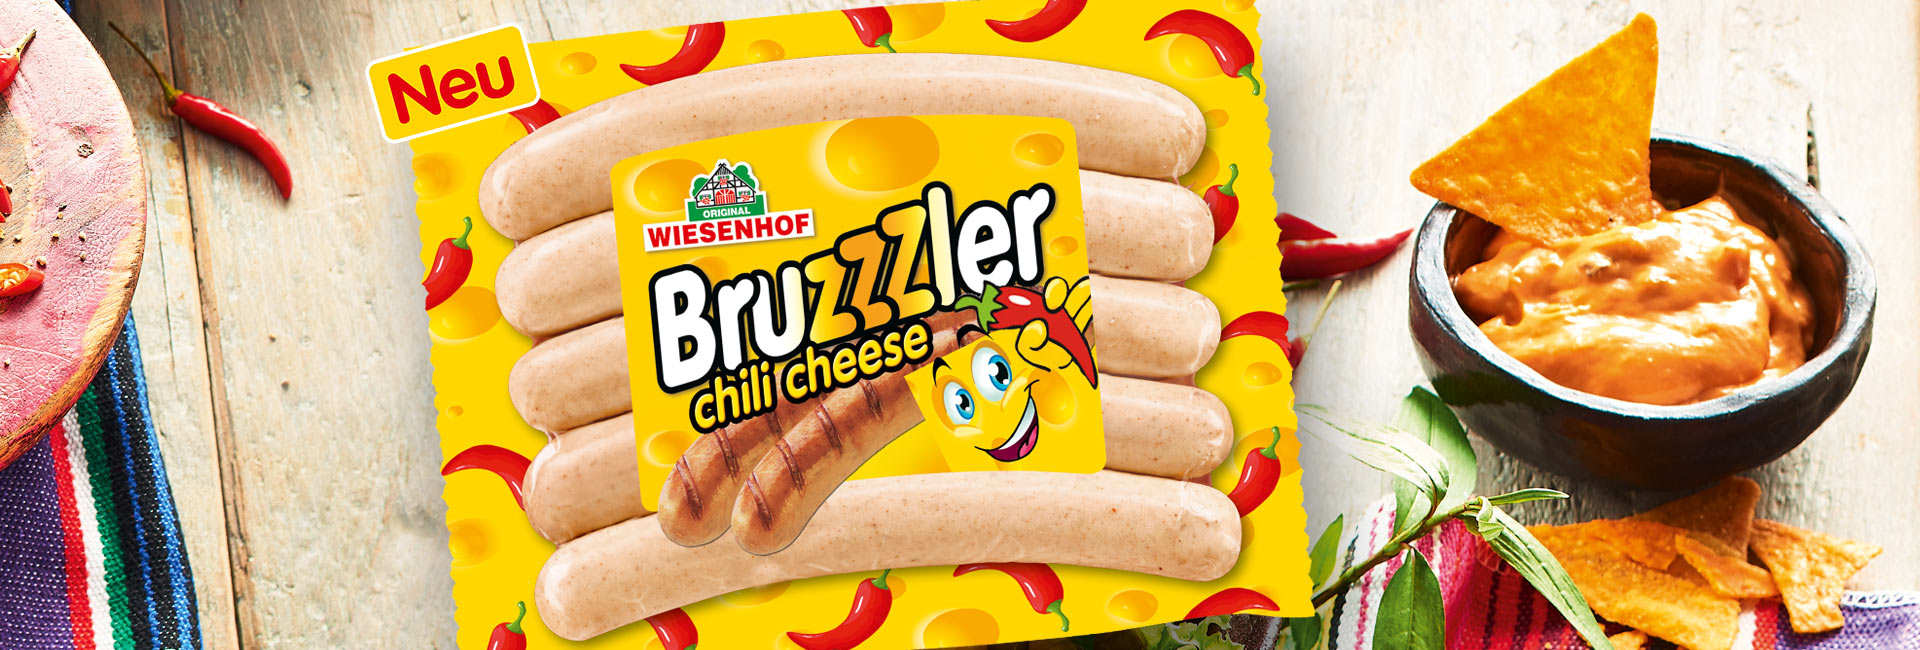 Bruzzzler chili cheese von WIESENHOF